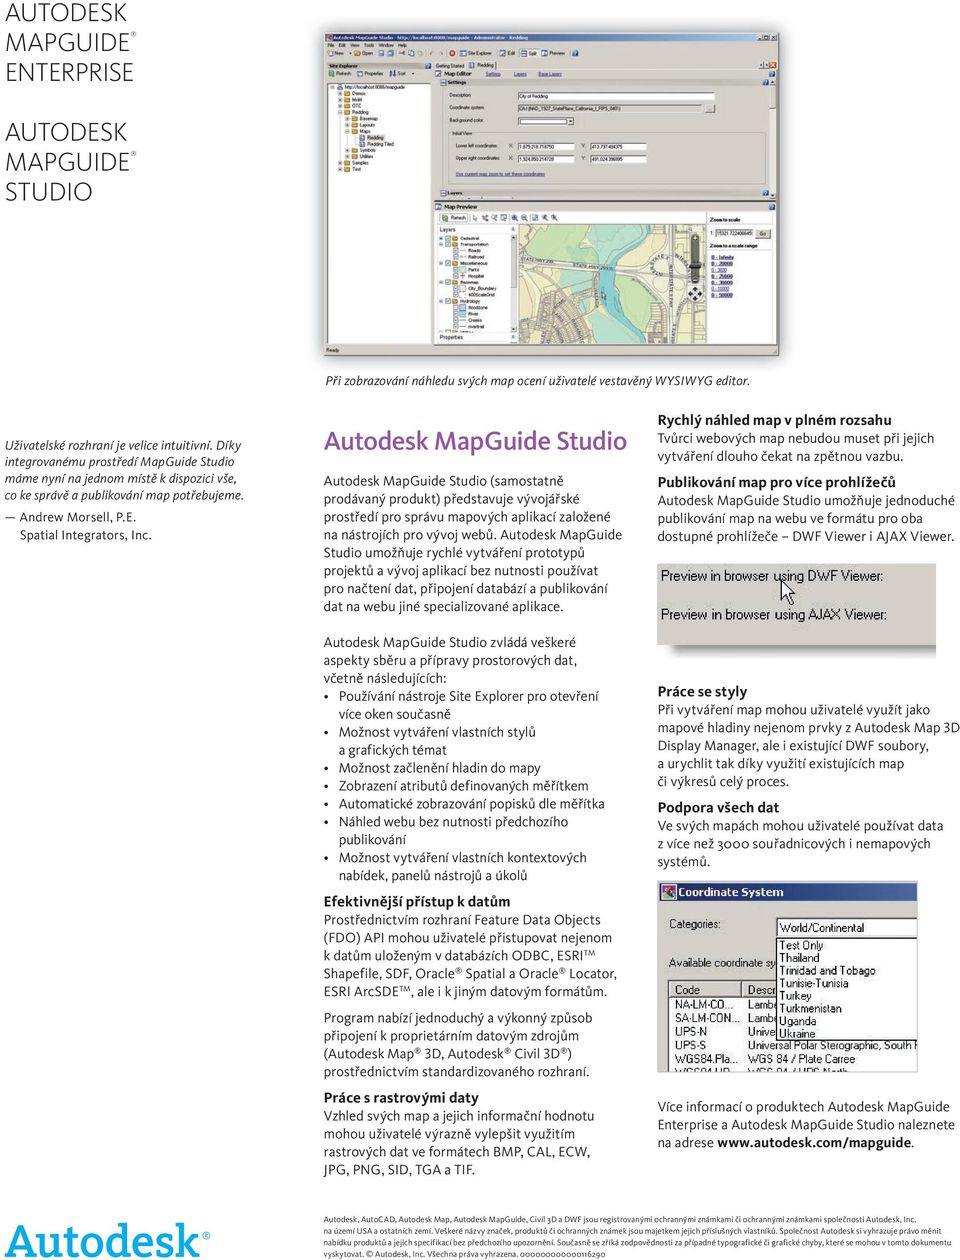 Autodesk MapGuide Studio Autodesk MapGuide Studio (samostatně prodávaný produkt) představuje vývojářské prostředí pro správu mapových aplikací založené na nástrojích pro vývoj webů.